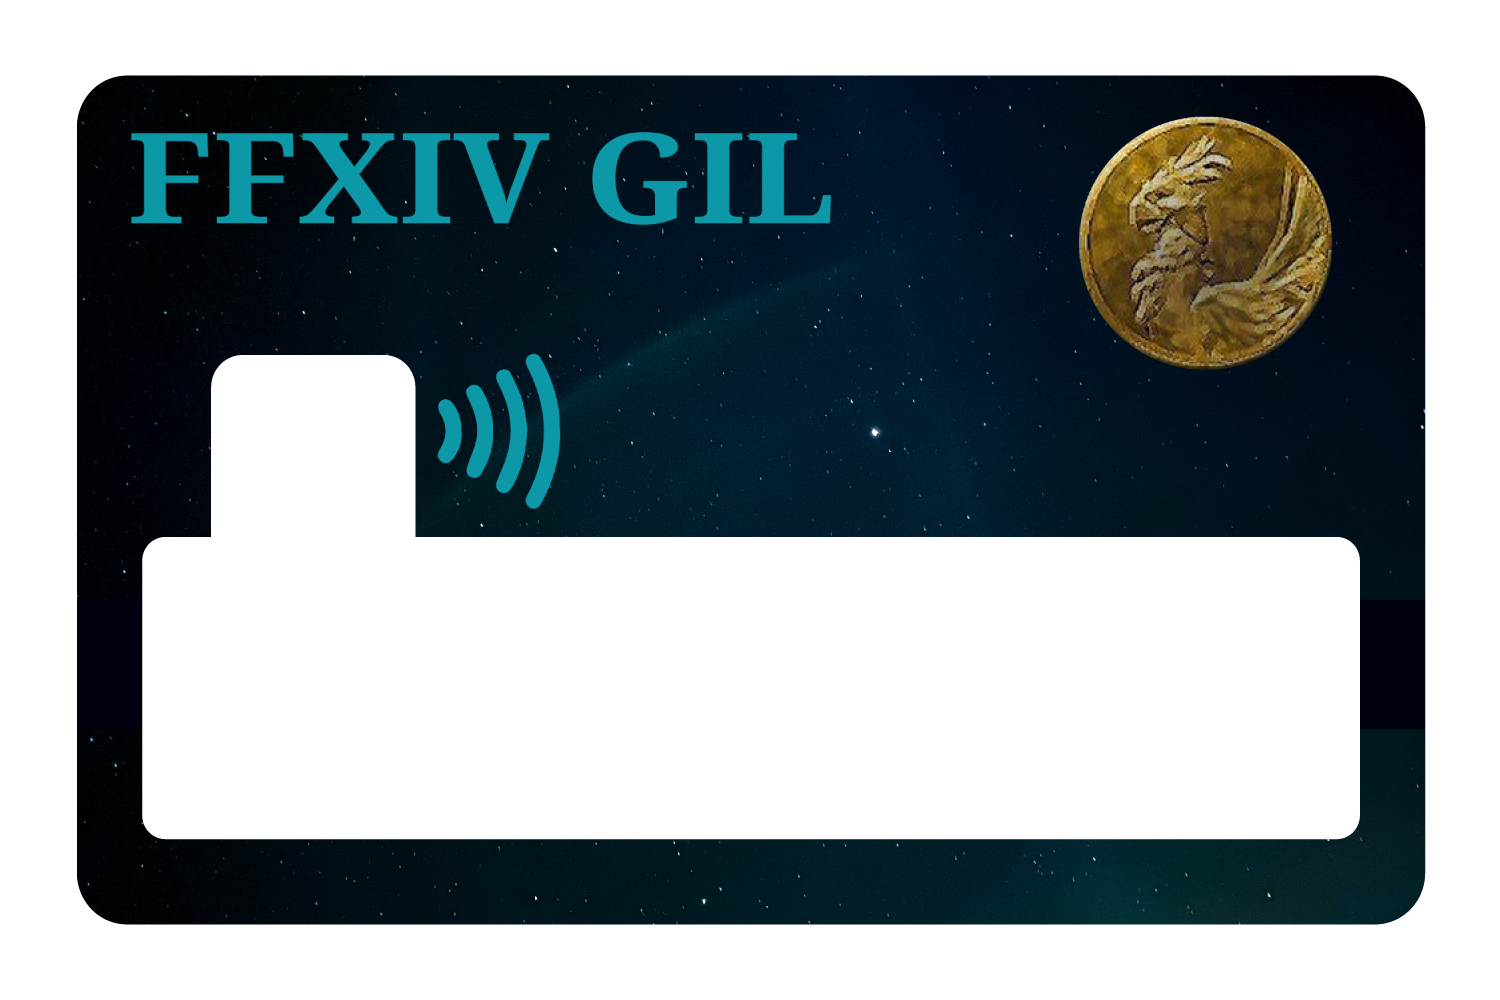 FFXIV Gil